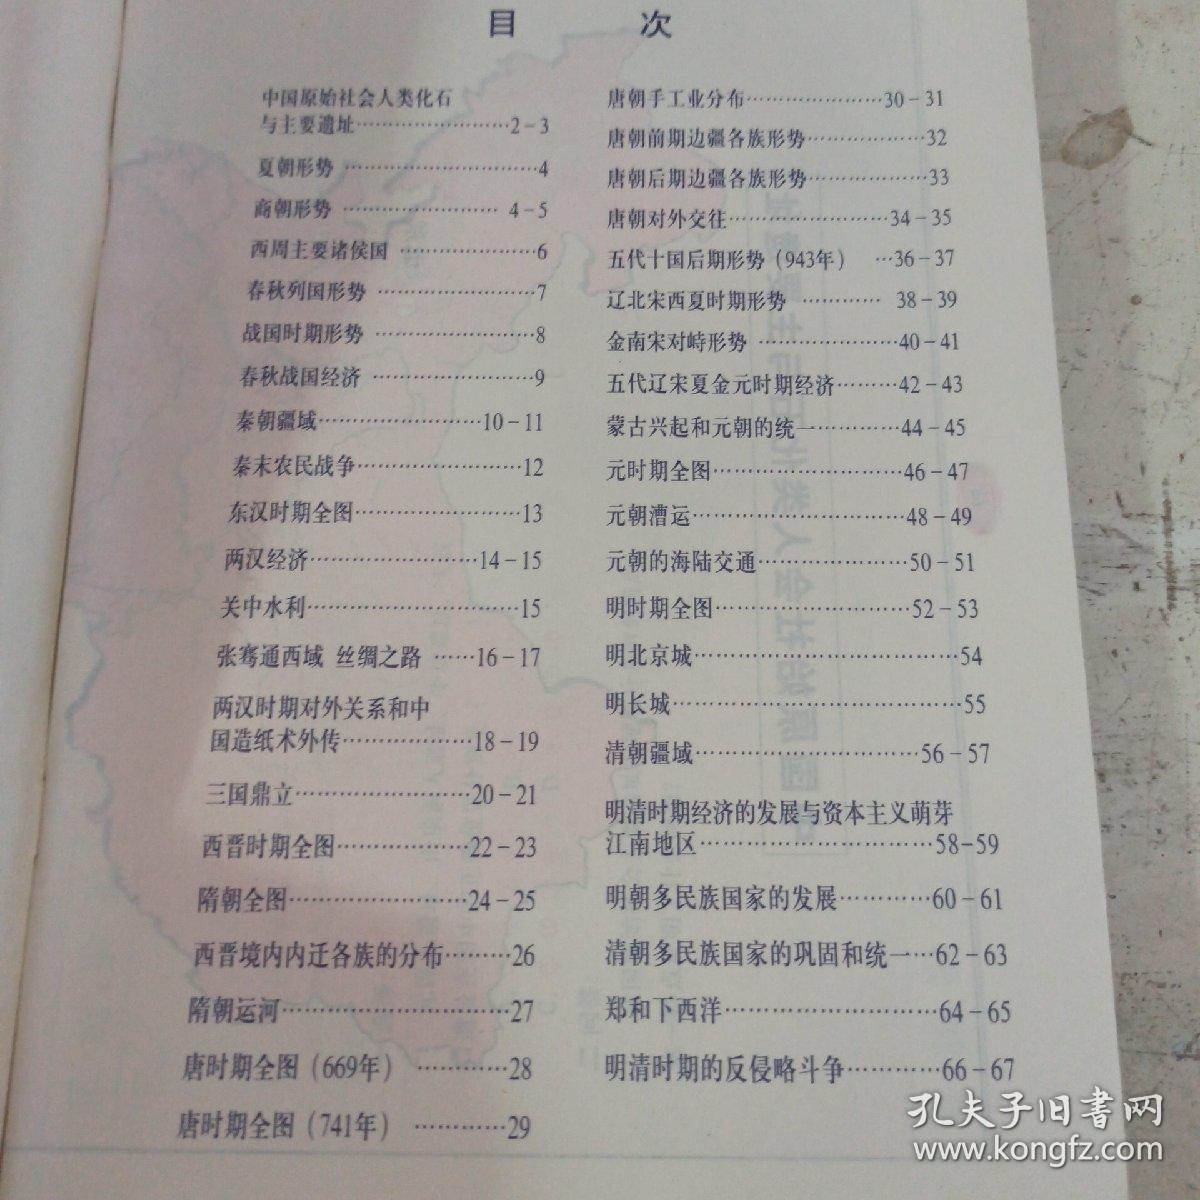 高级中学  中国古代史地图填充练习册 全一册 无笔记